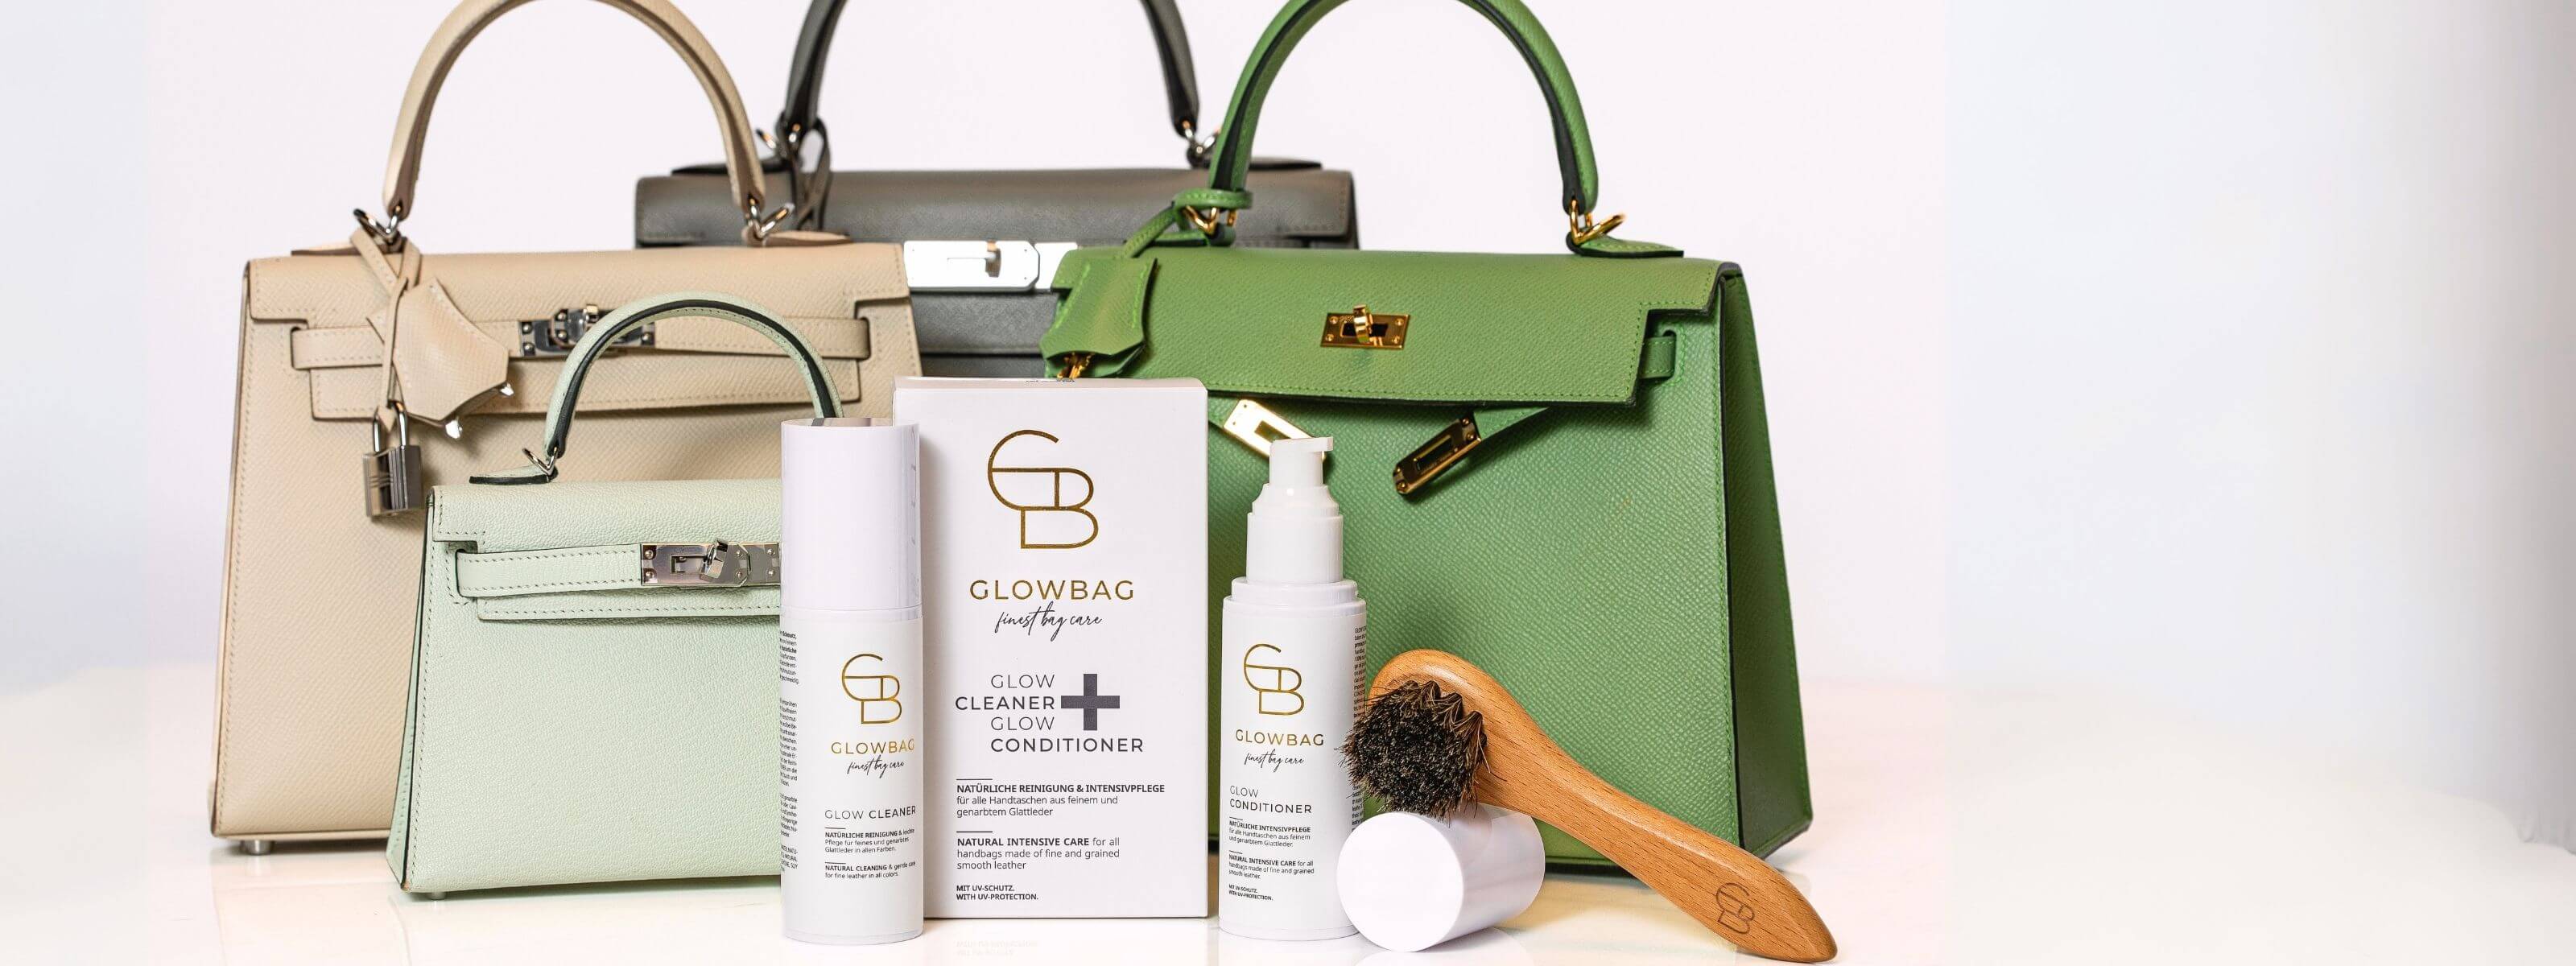 GLOWBAG - Reinigung und Pflege für deine Designer-Handtasche